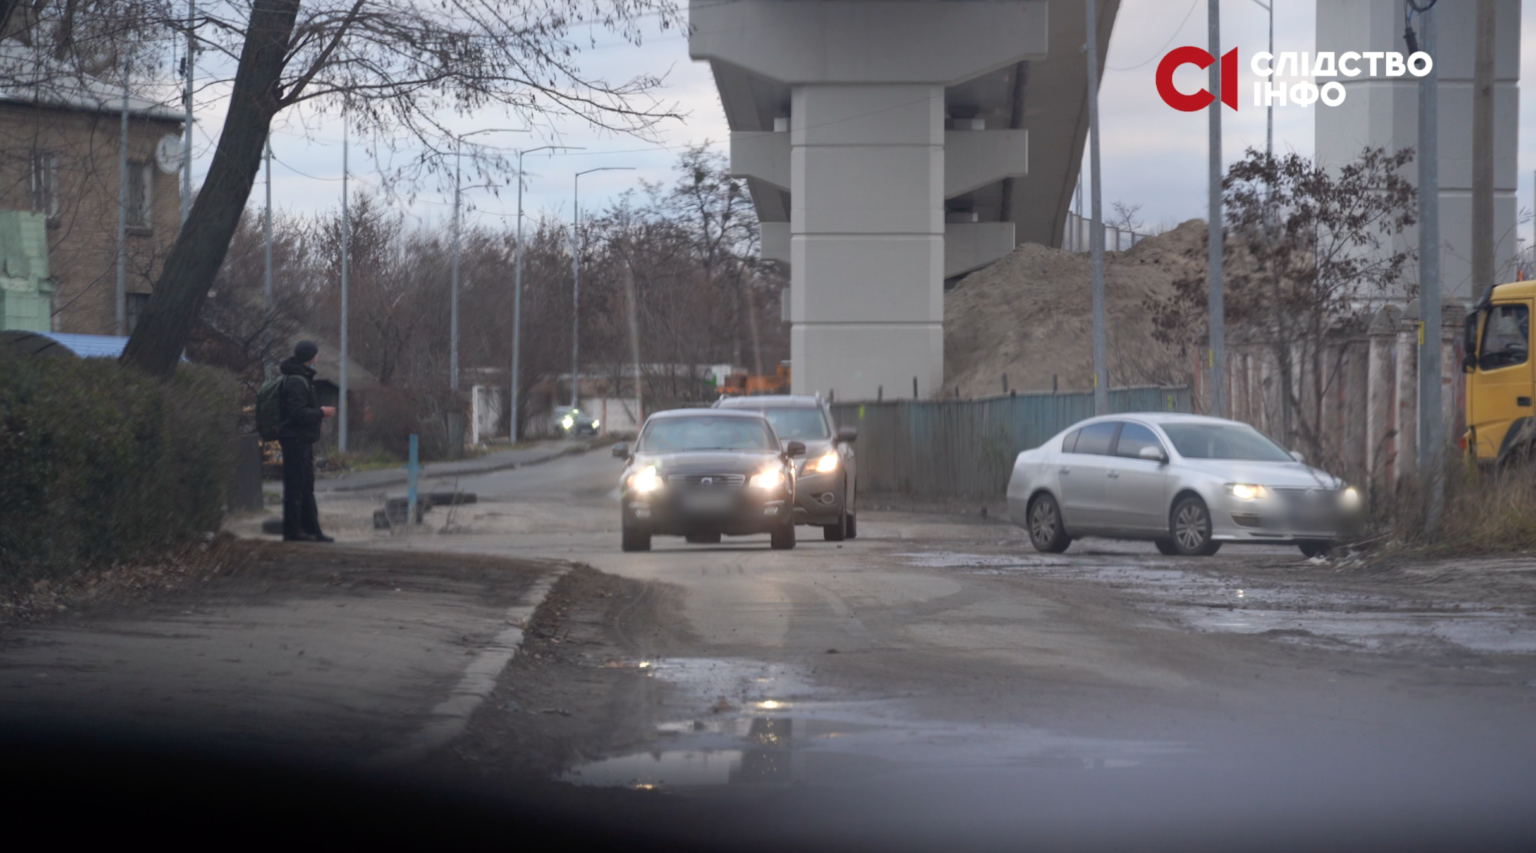 Слідство.інфо: Из дома Гогилашвили неоднократно ездил кортеж в ГУР – видео